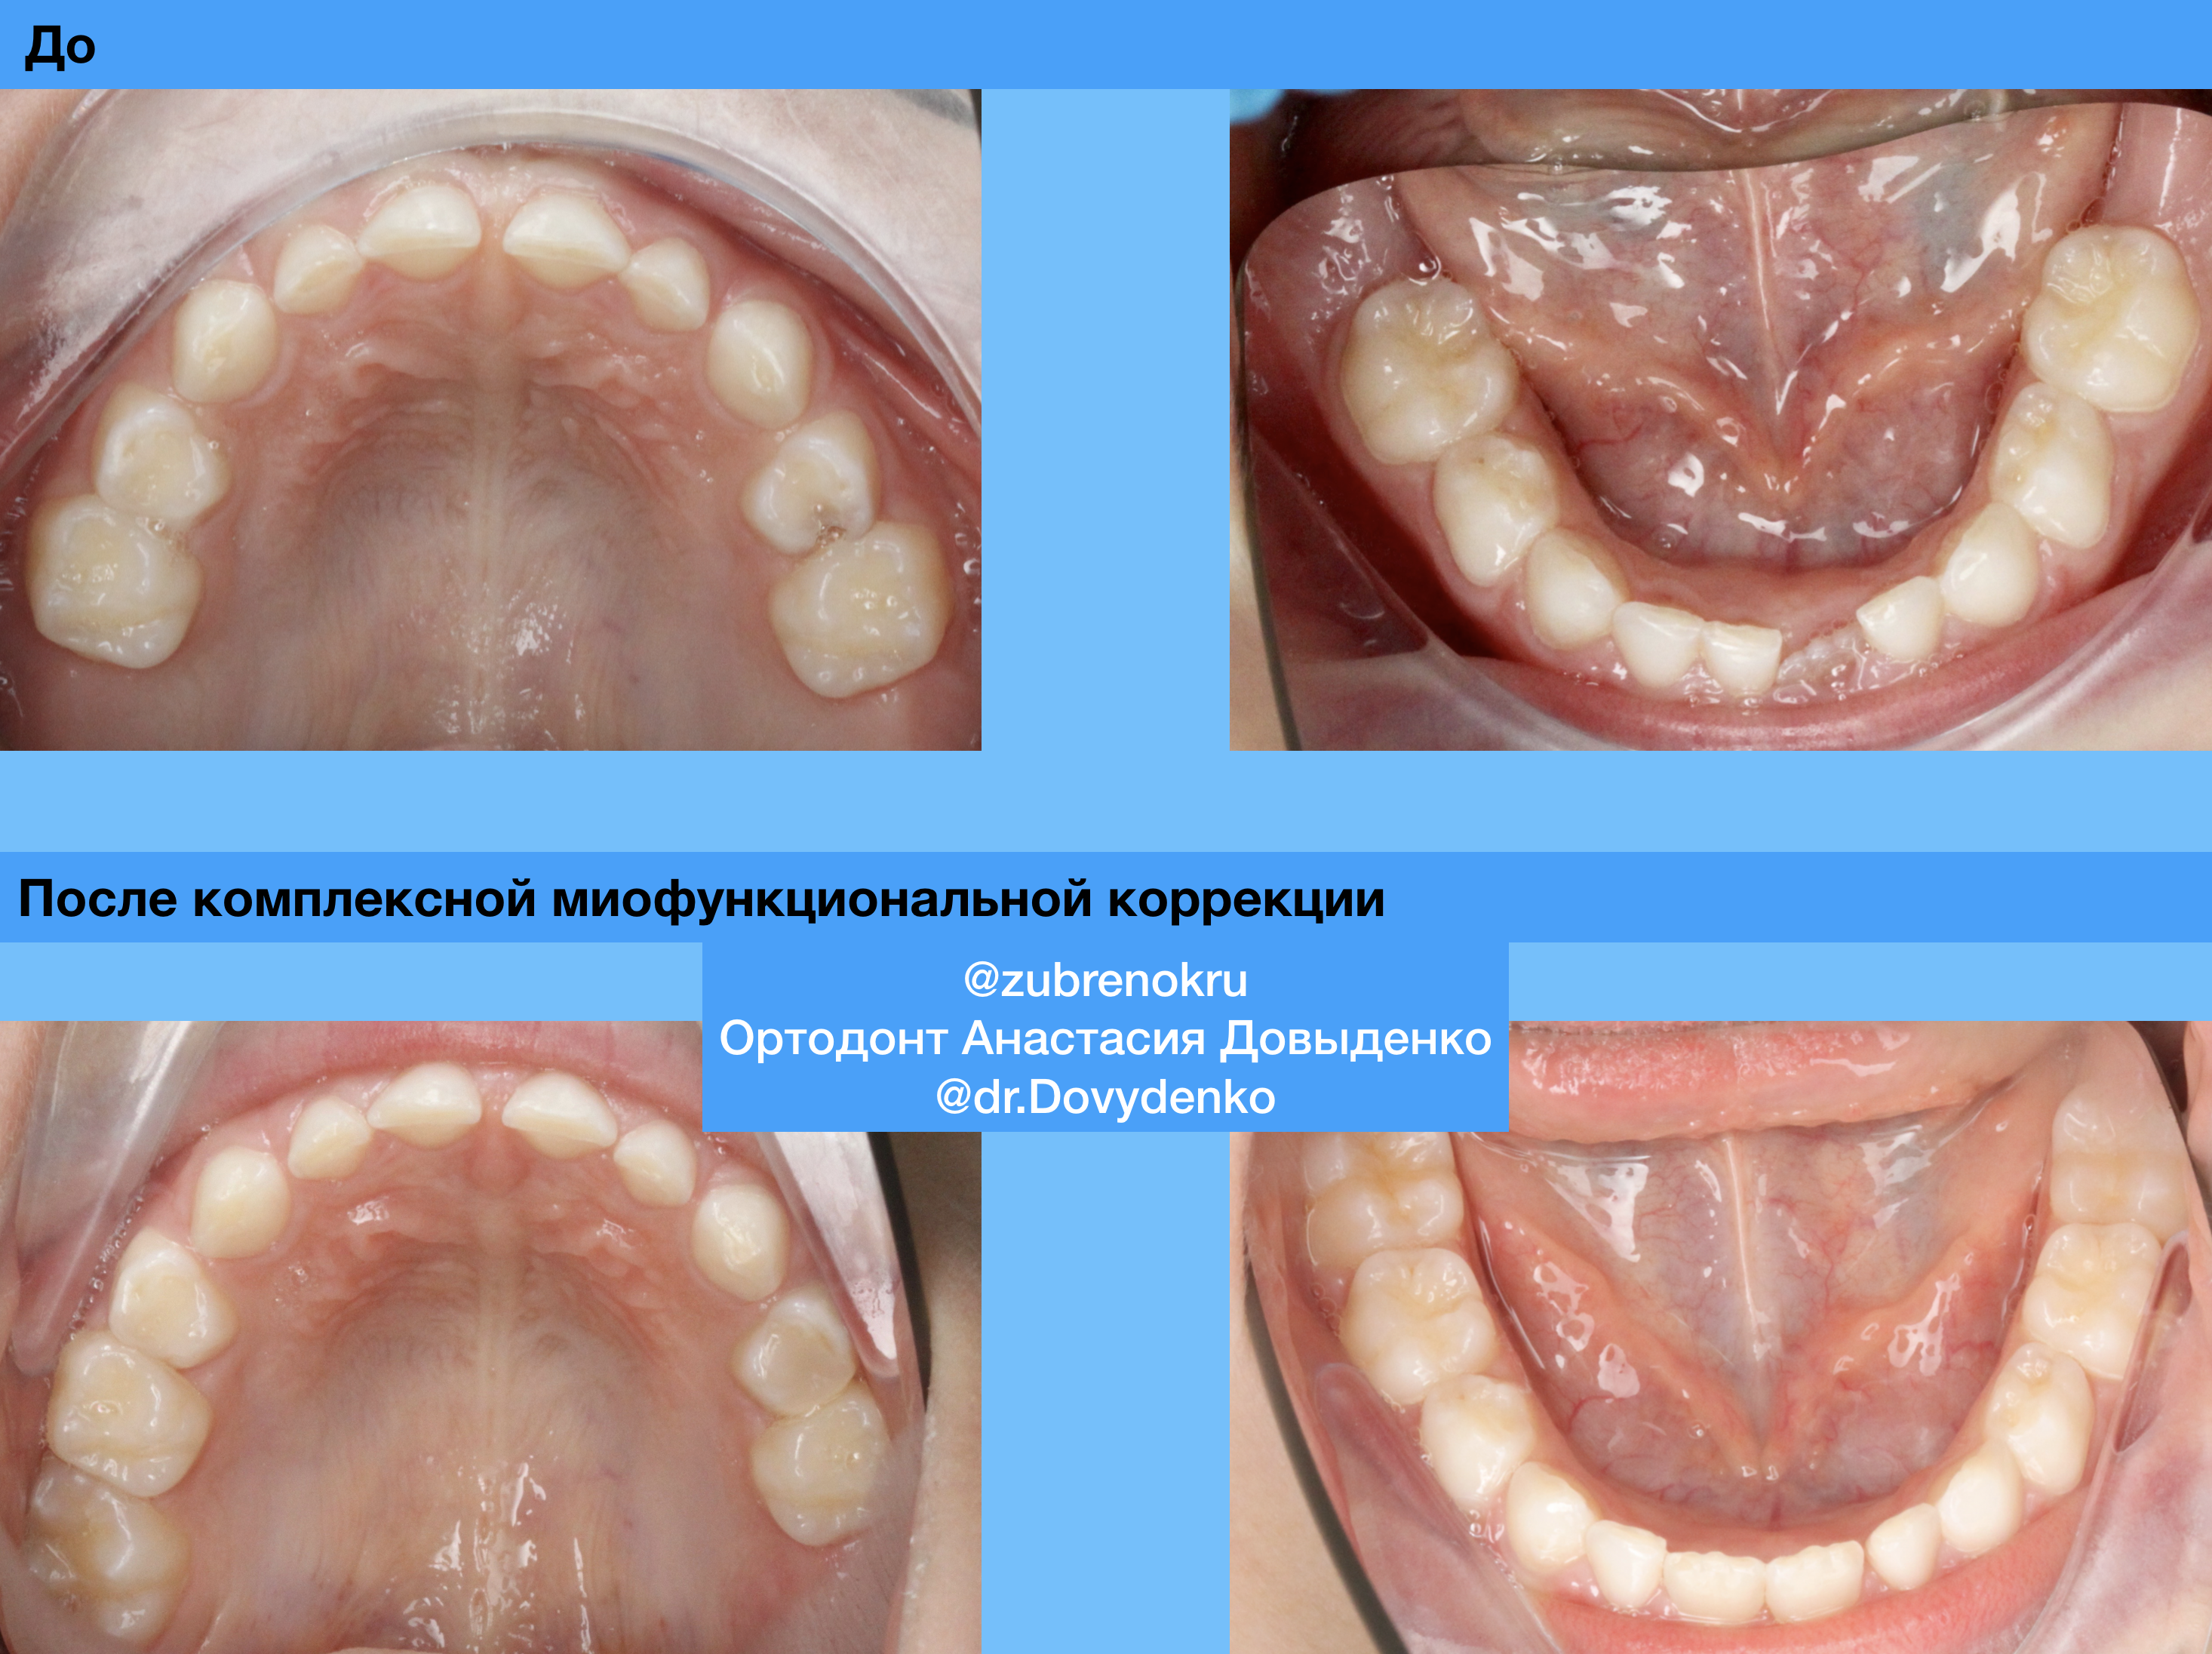 Ортодонтическое лечение с использованием силиконовой каппы Myobrace